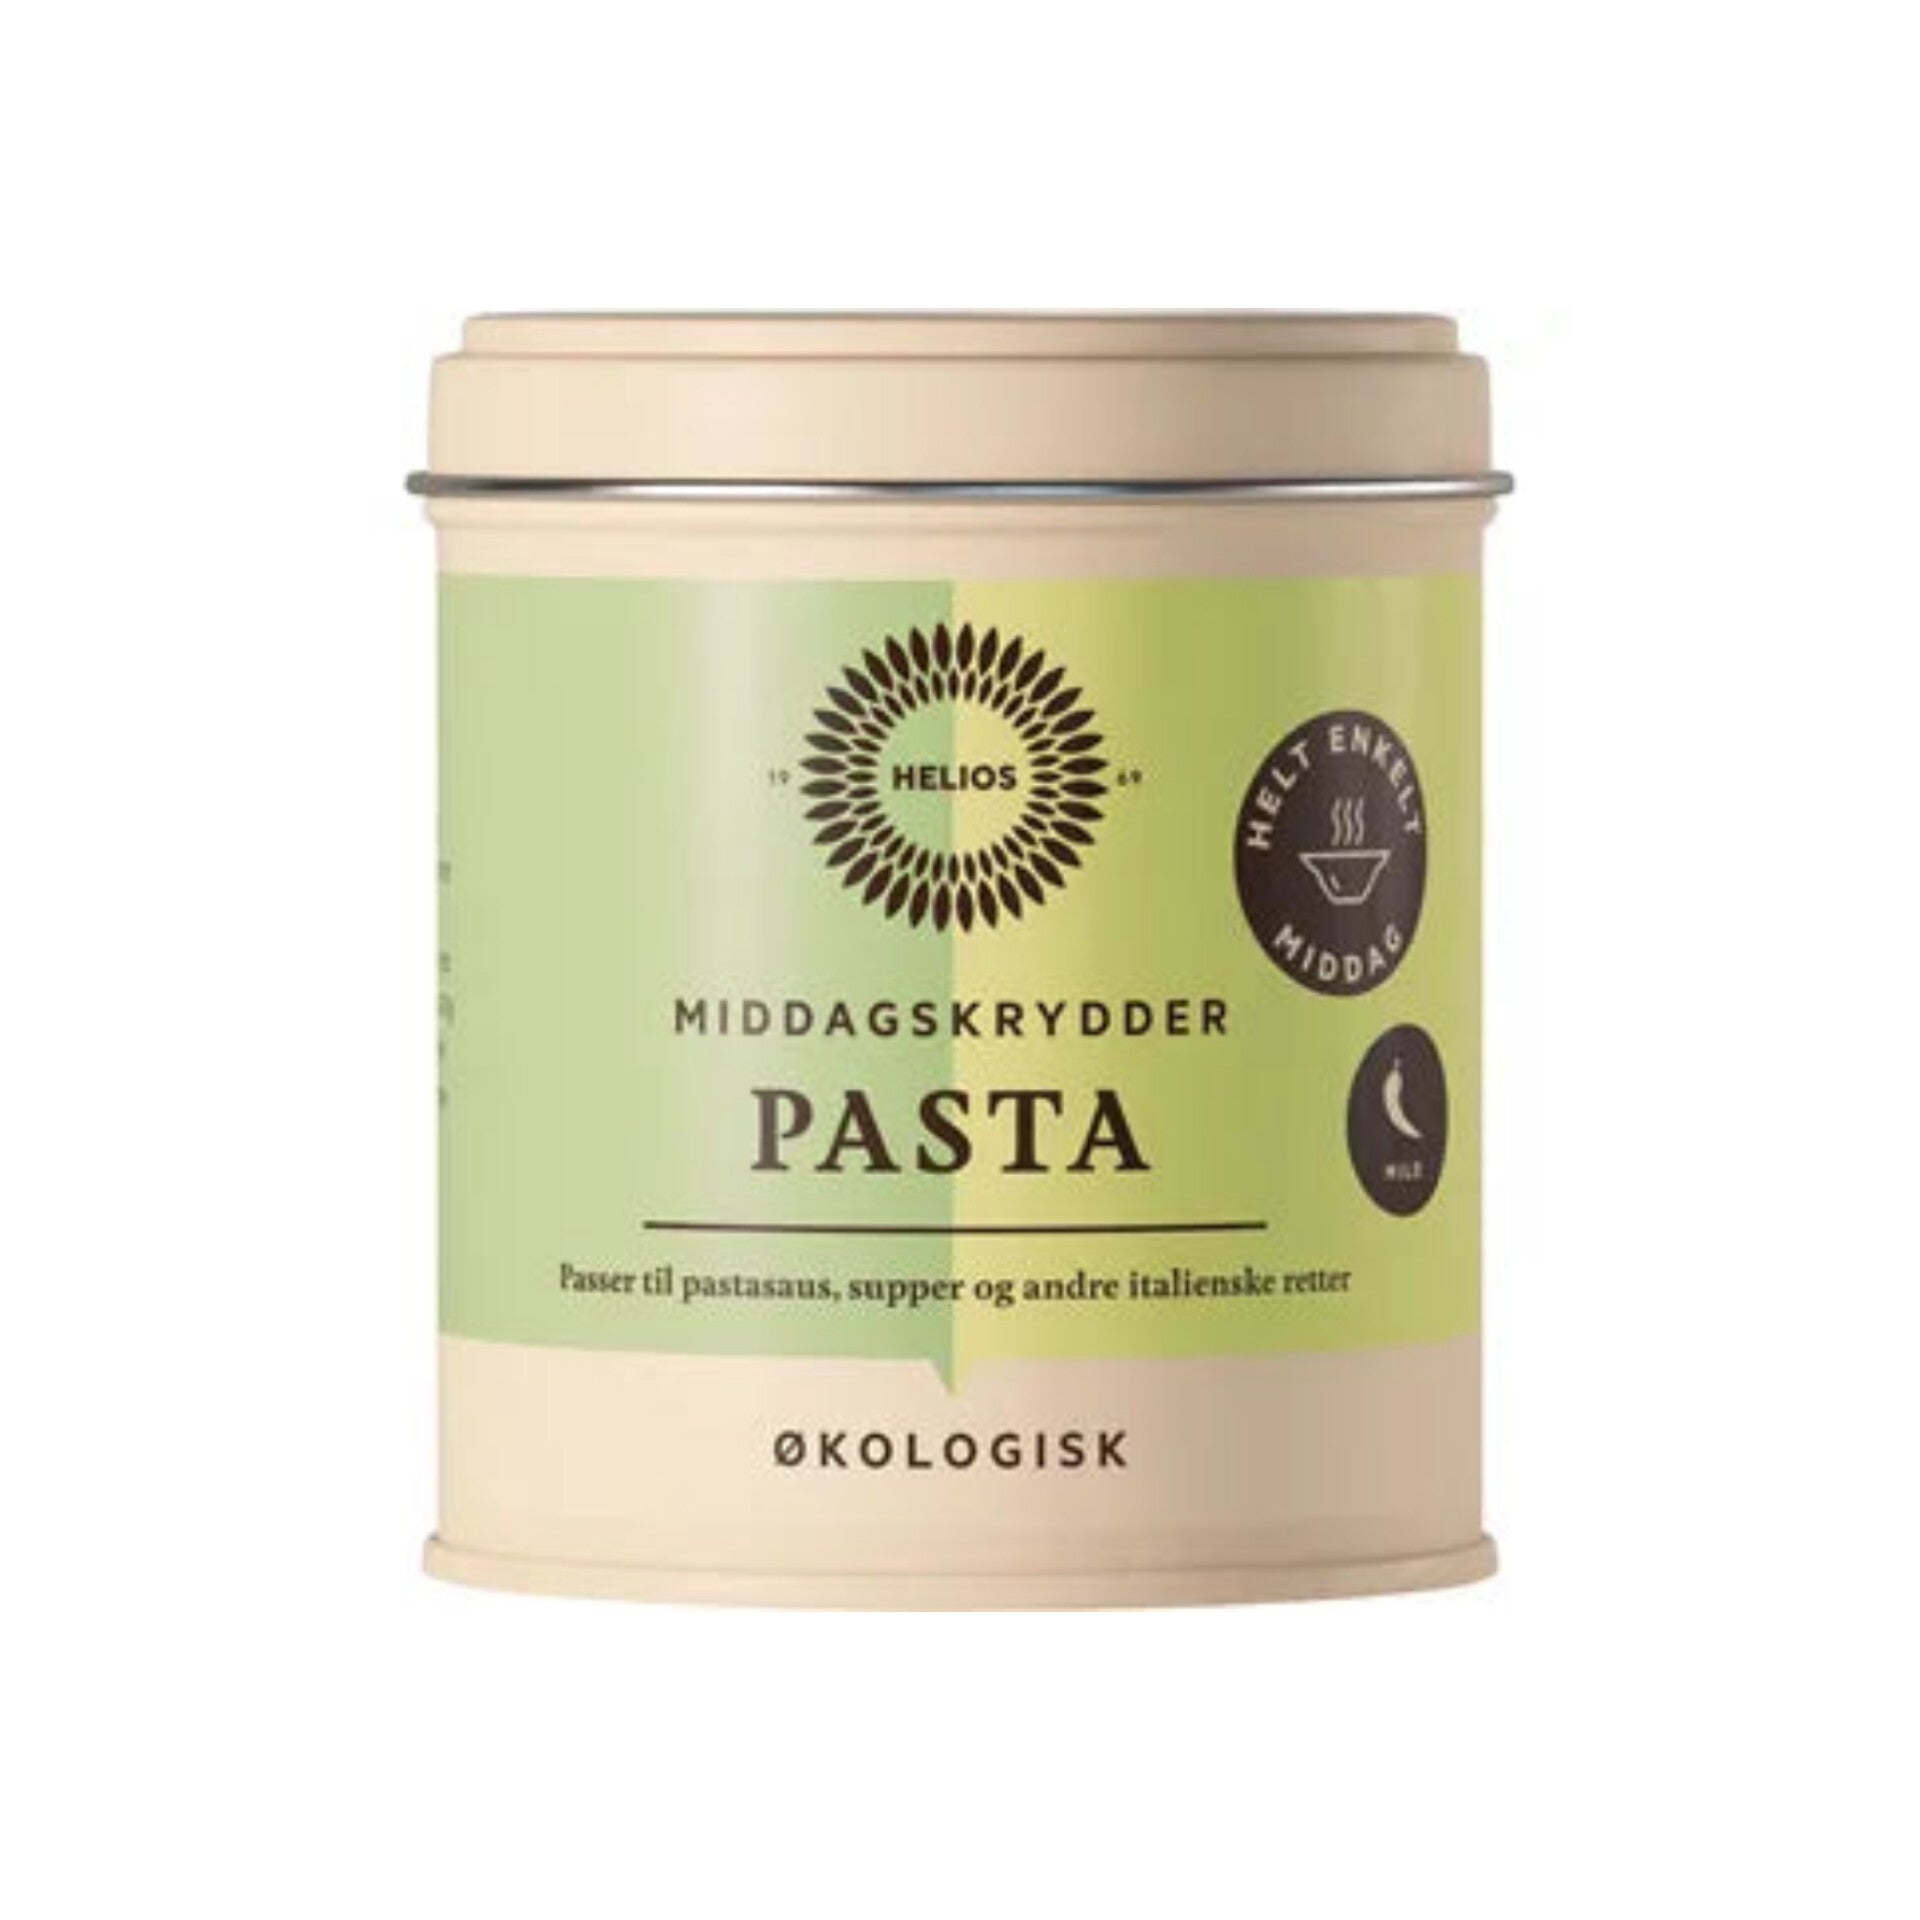 Helios pasta middagskrydder 65 g økologisk